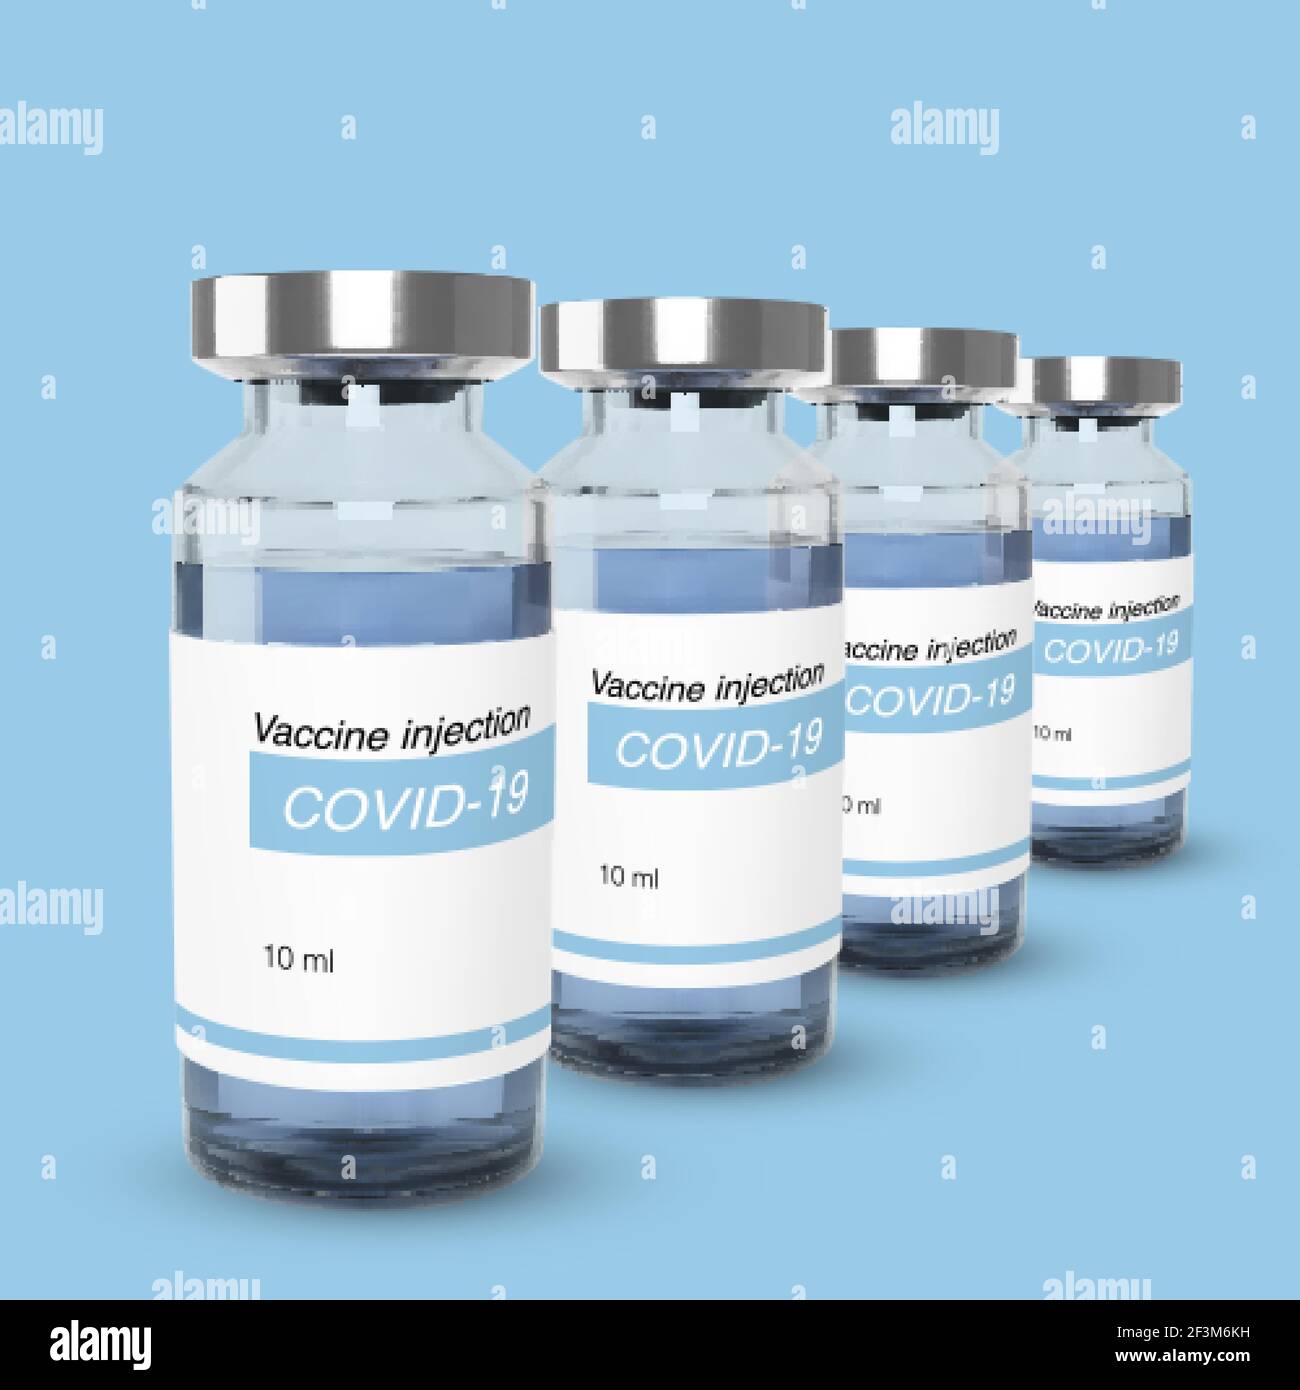 Flacone con vaccino da covid-19. Modello di banner Web per la vaccinazione e il trattamento. Illustrazione vettoriale realistica Illustrazione Vettoriale